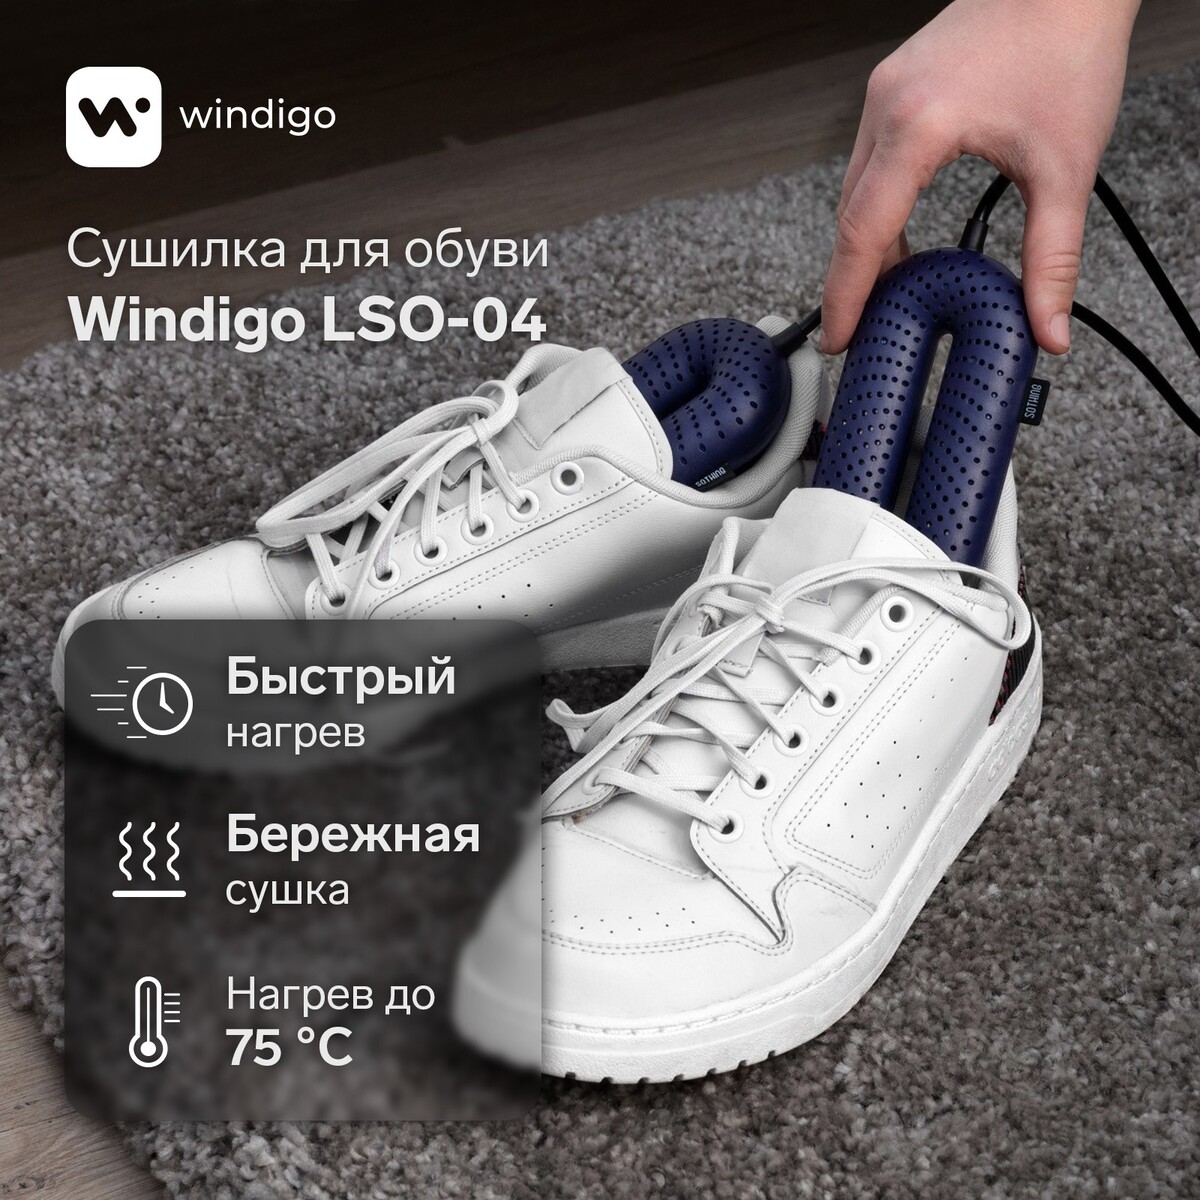 Сушилка для обуви windigo lso-04, 17 см, 20 вт, индикатор, синяя сушилка для обуви windigo lso 04 17 см 20 вт индикатор синяя